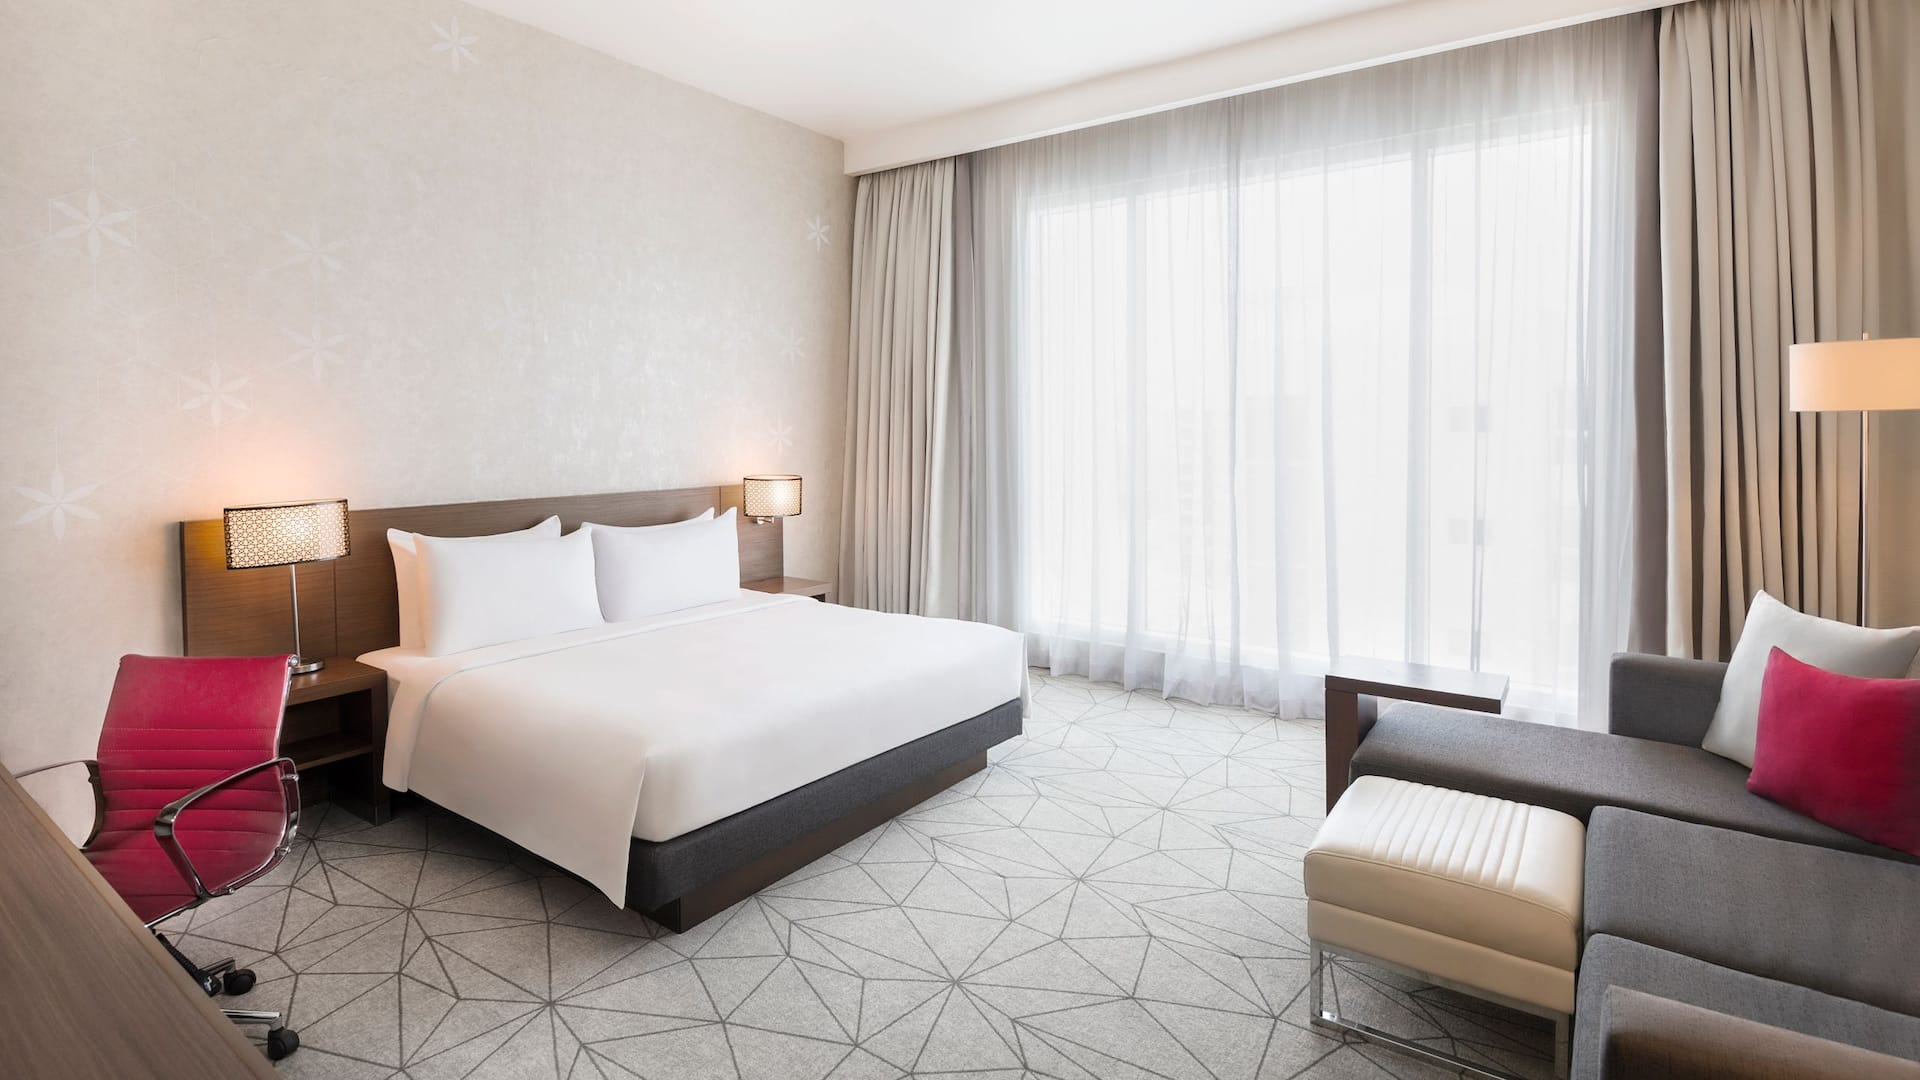 King Bedroom with Sofa bed at Hyatt Place Dubai Al Rigga